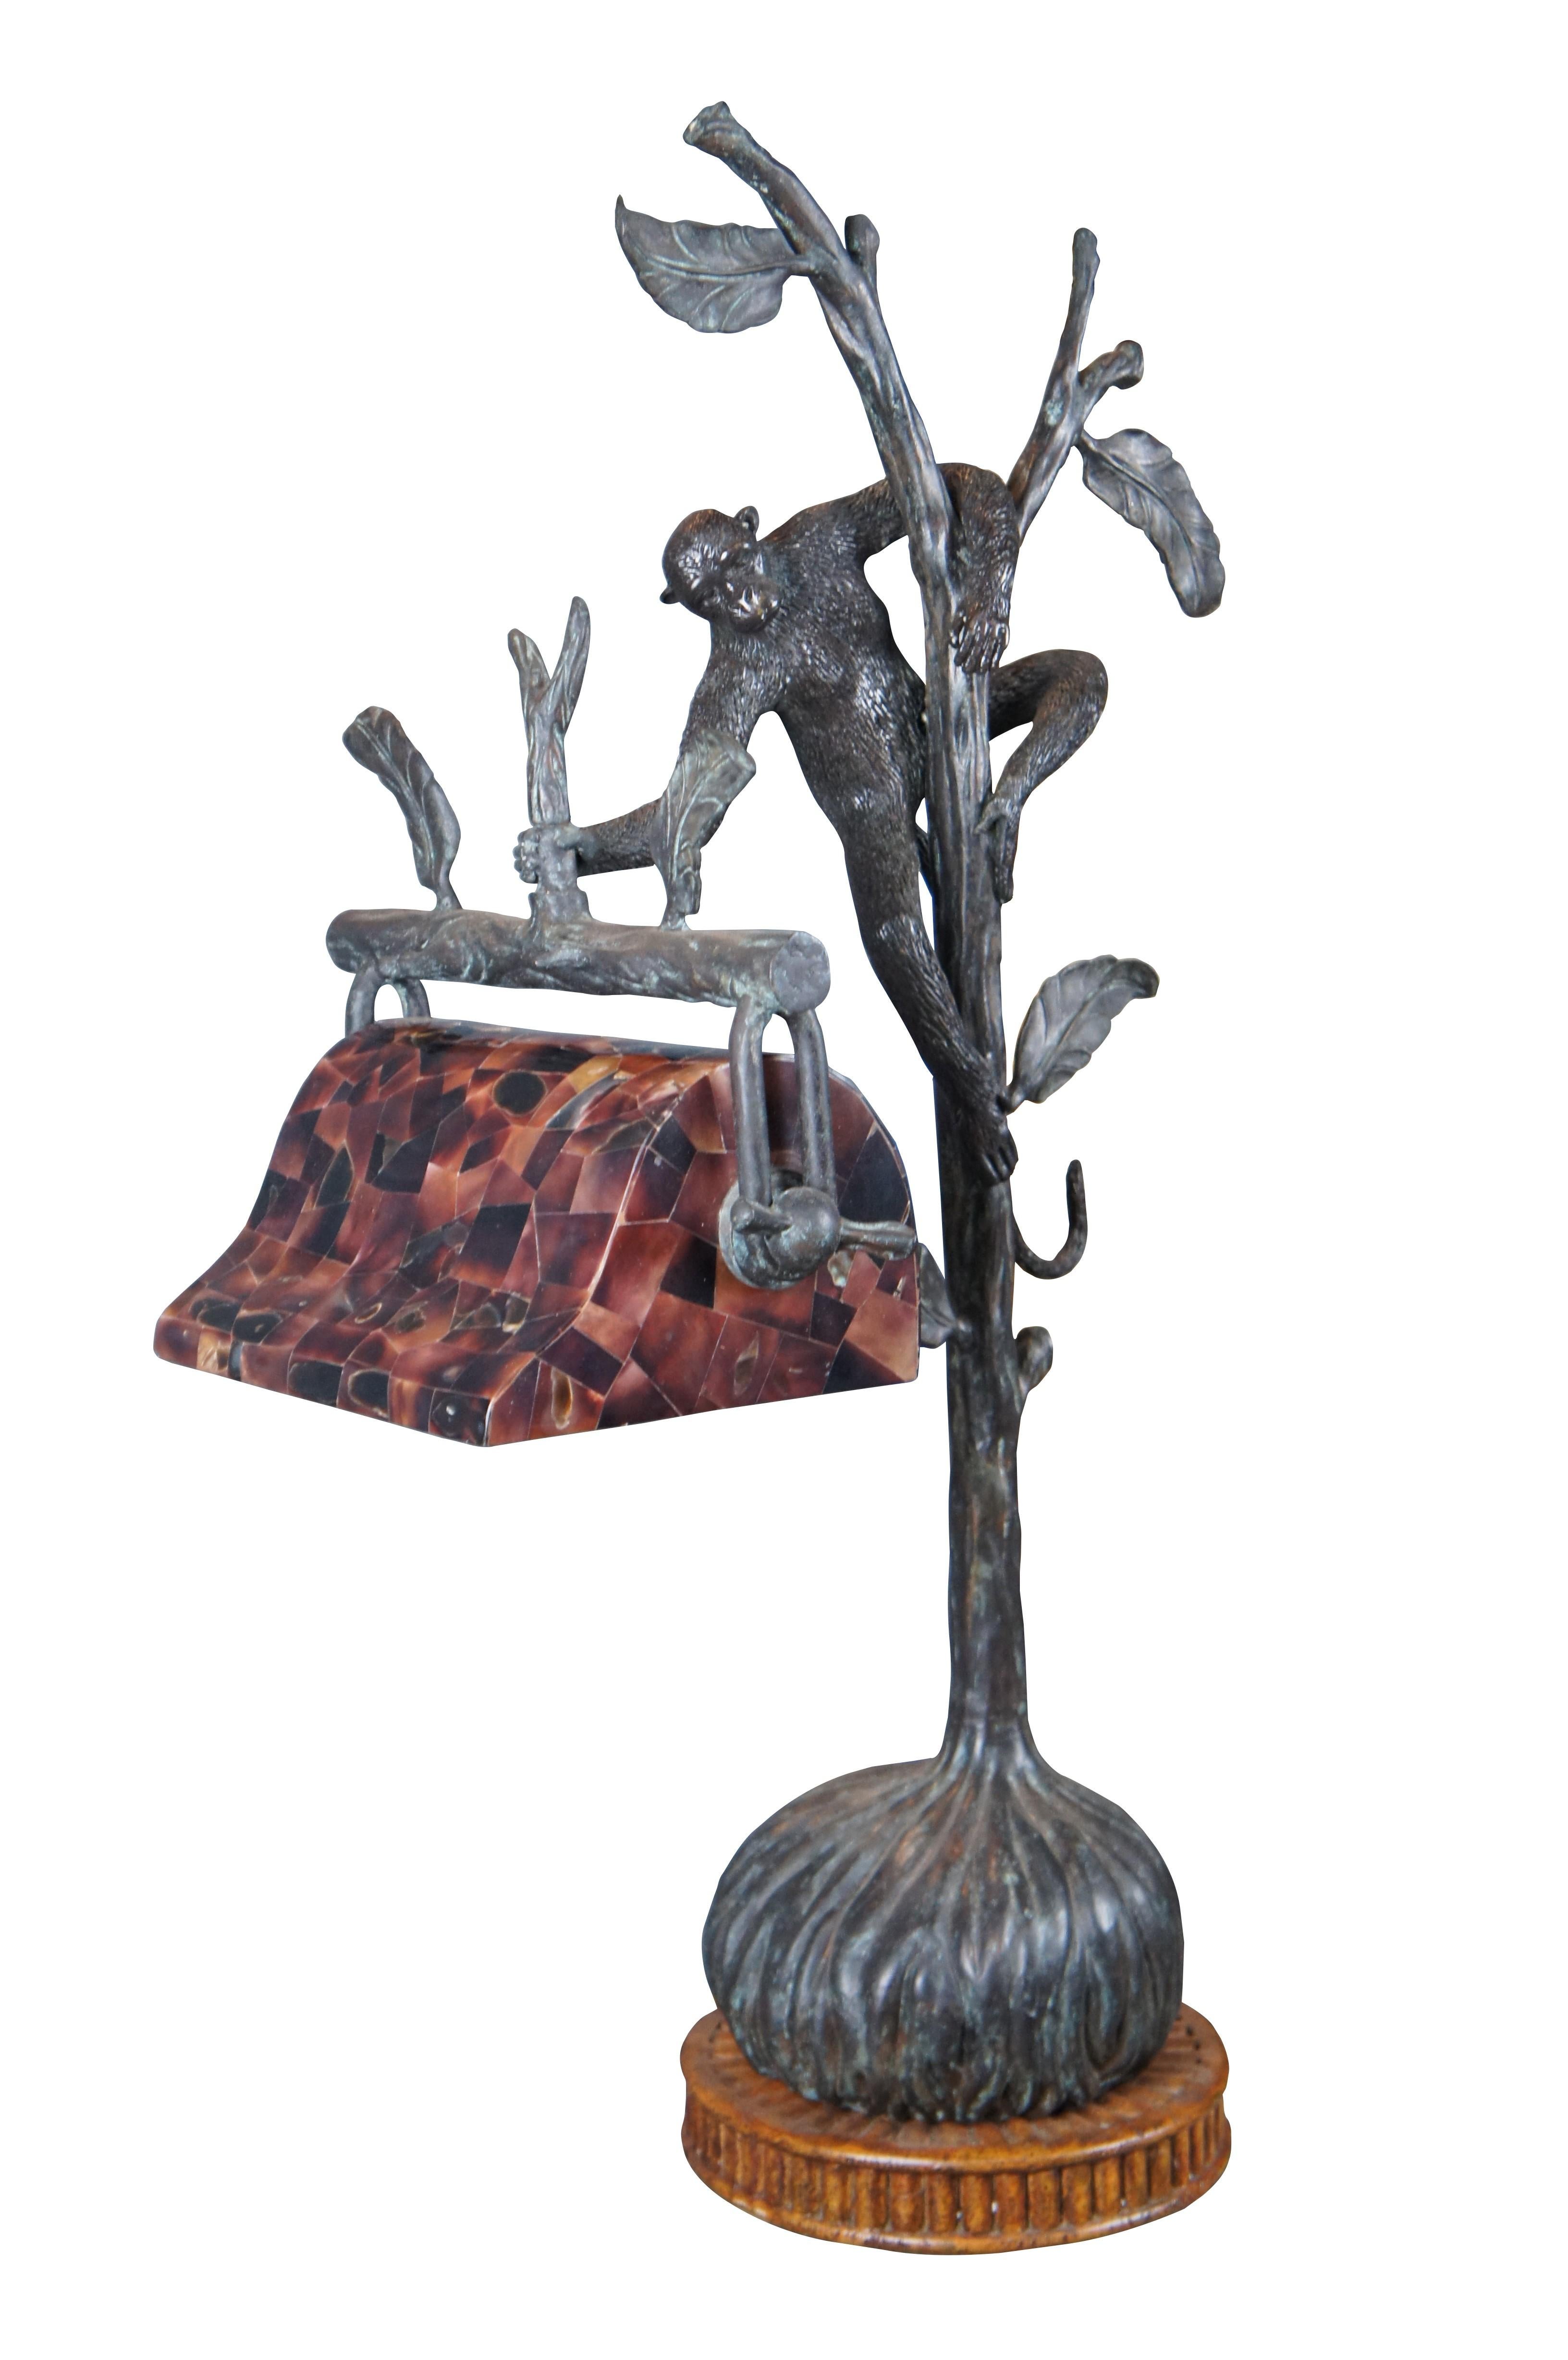 Une impressionnante lampe figurative en bronze faite à la main par Maitland Smith. Un singe grimpant sur une branche d'arbre, tenant un stylo réglable de style banquier, avec un abat-jour en forme de coquille. Le bronze est monté sur une base ronde